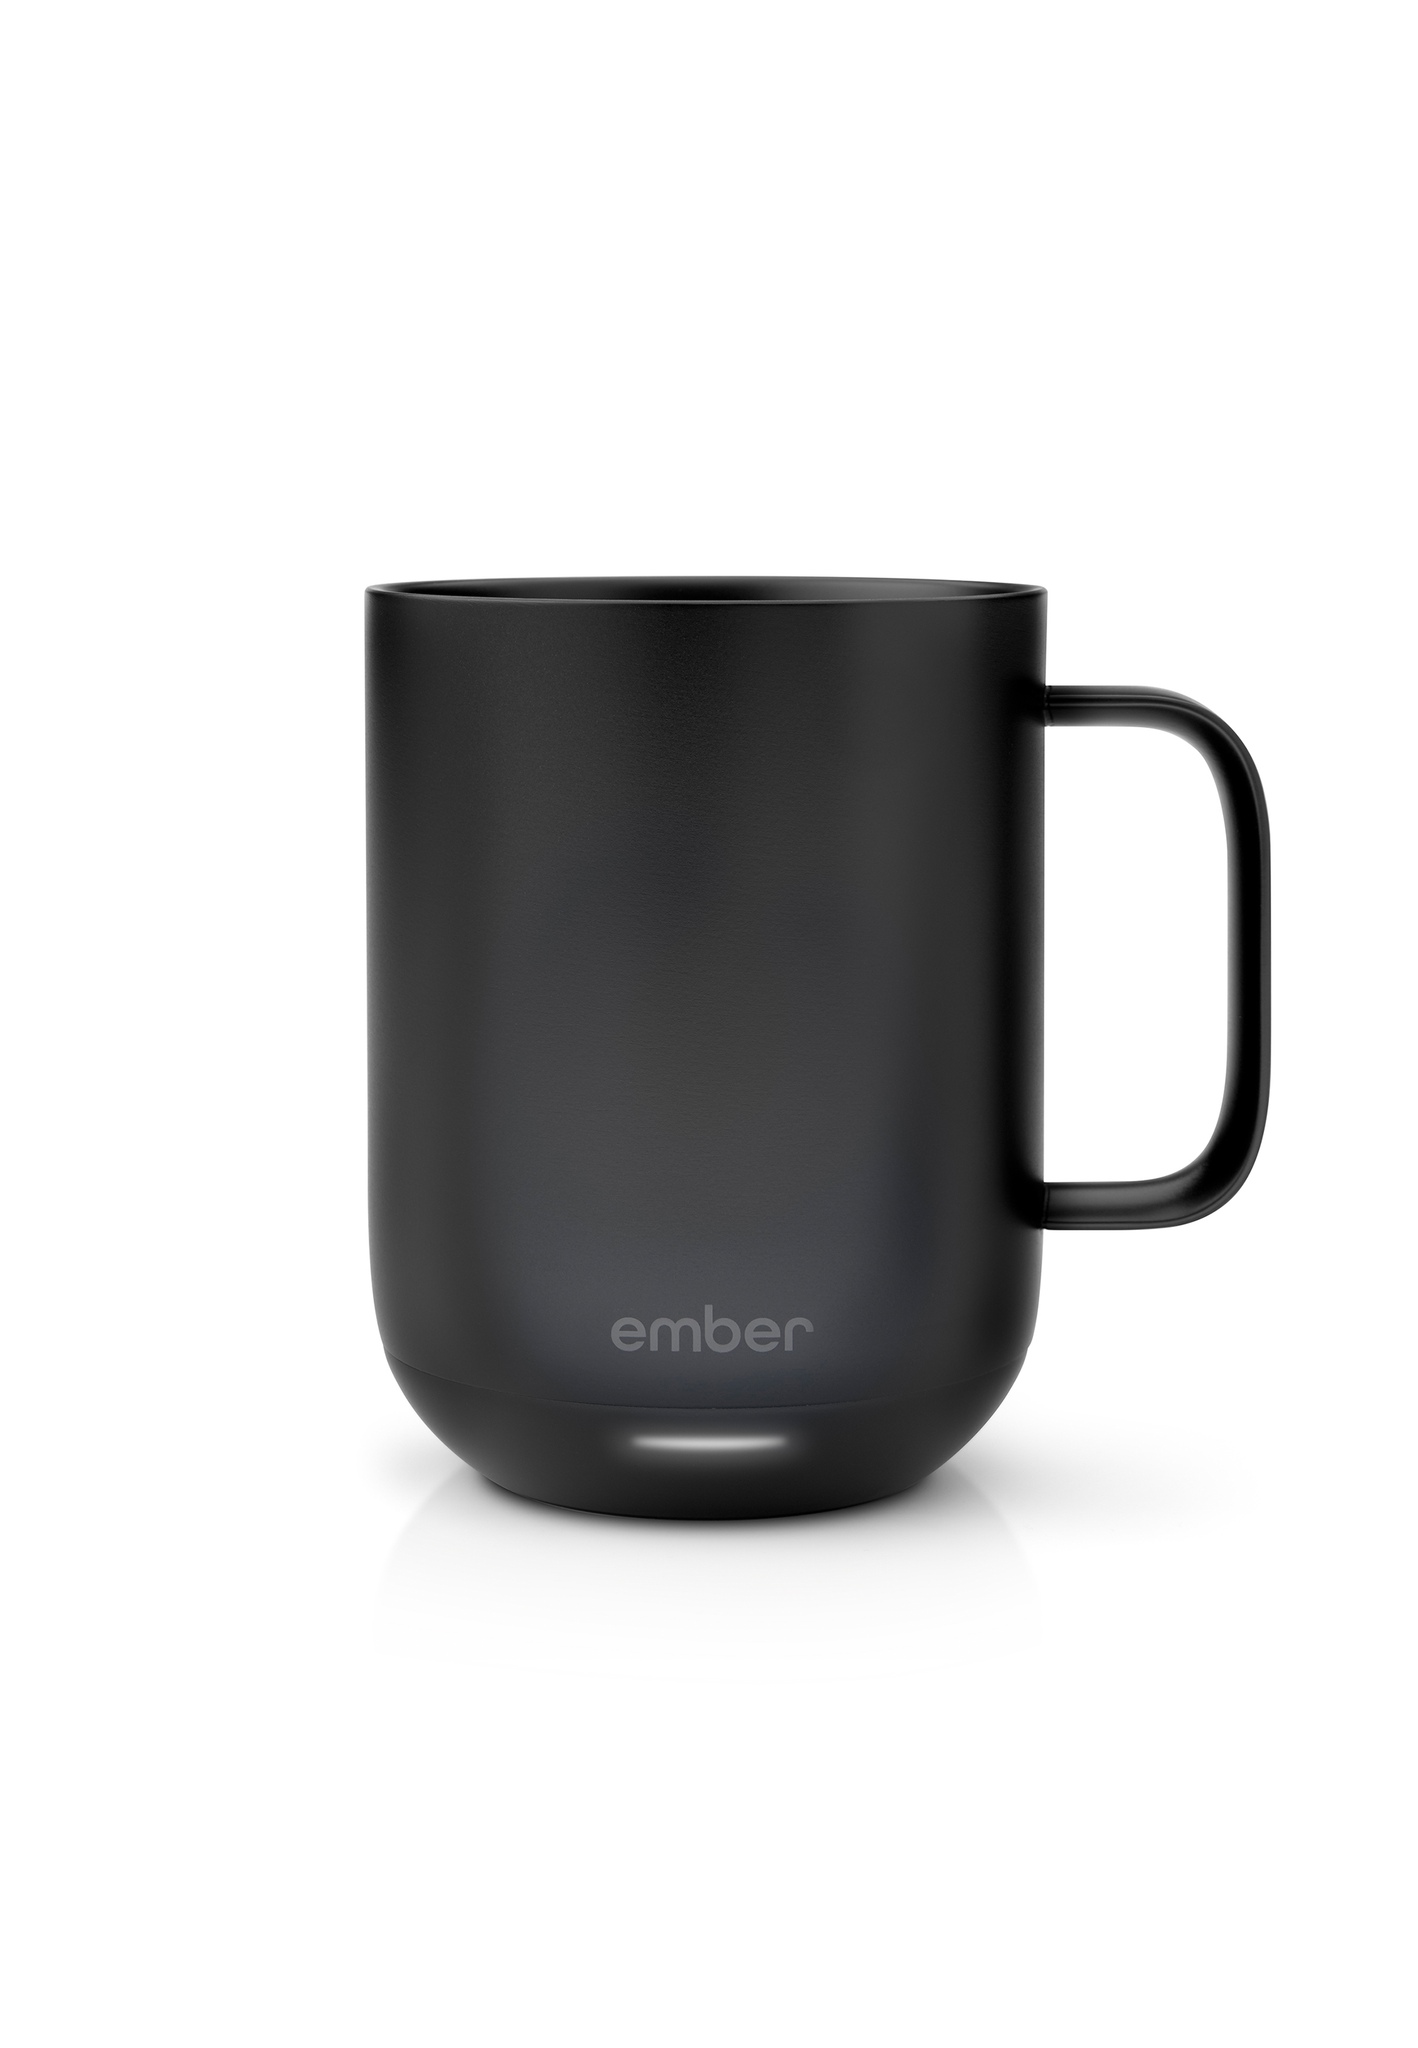 Ember Mug 2.0 - Black and White - Tectonic Coffee – Tectonic